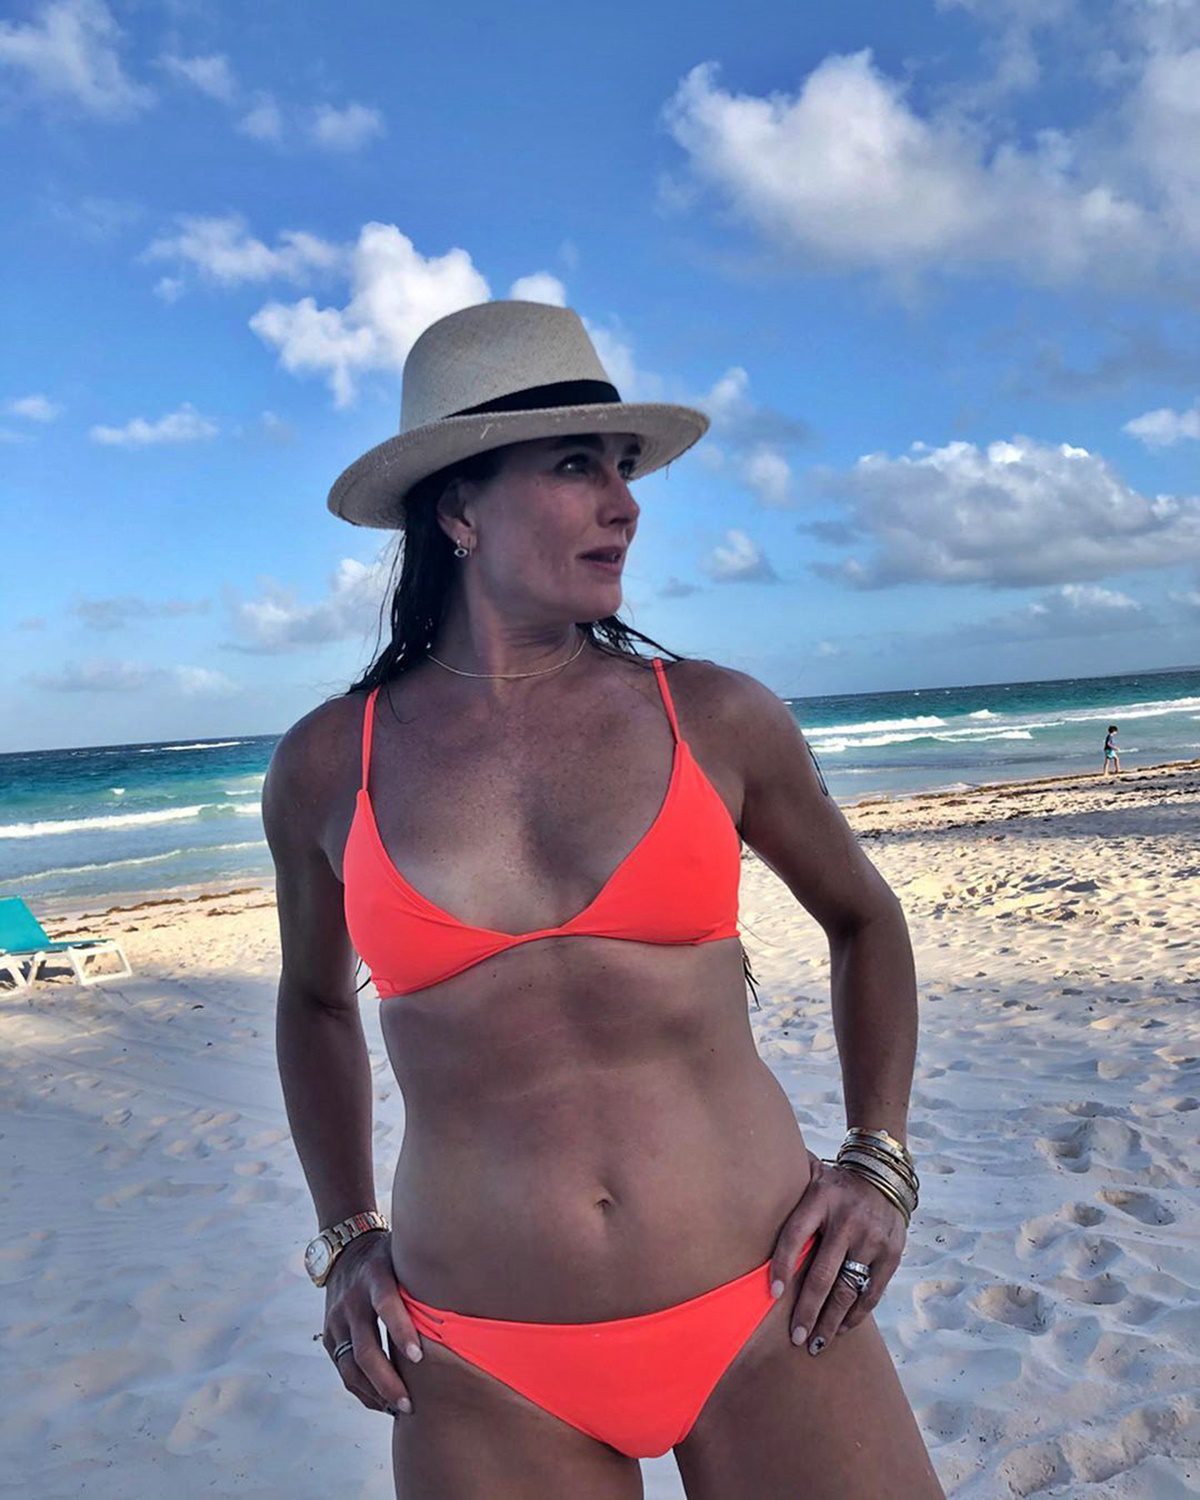 Plasztika nélkül is gyönyörű az 57 éves Brooke Shields - Ámulunk a friss fotóin!